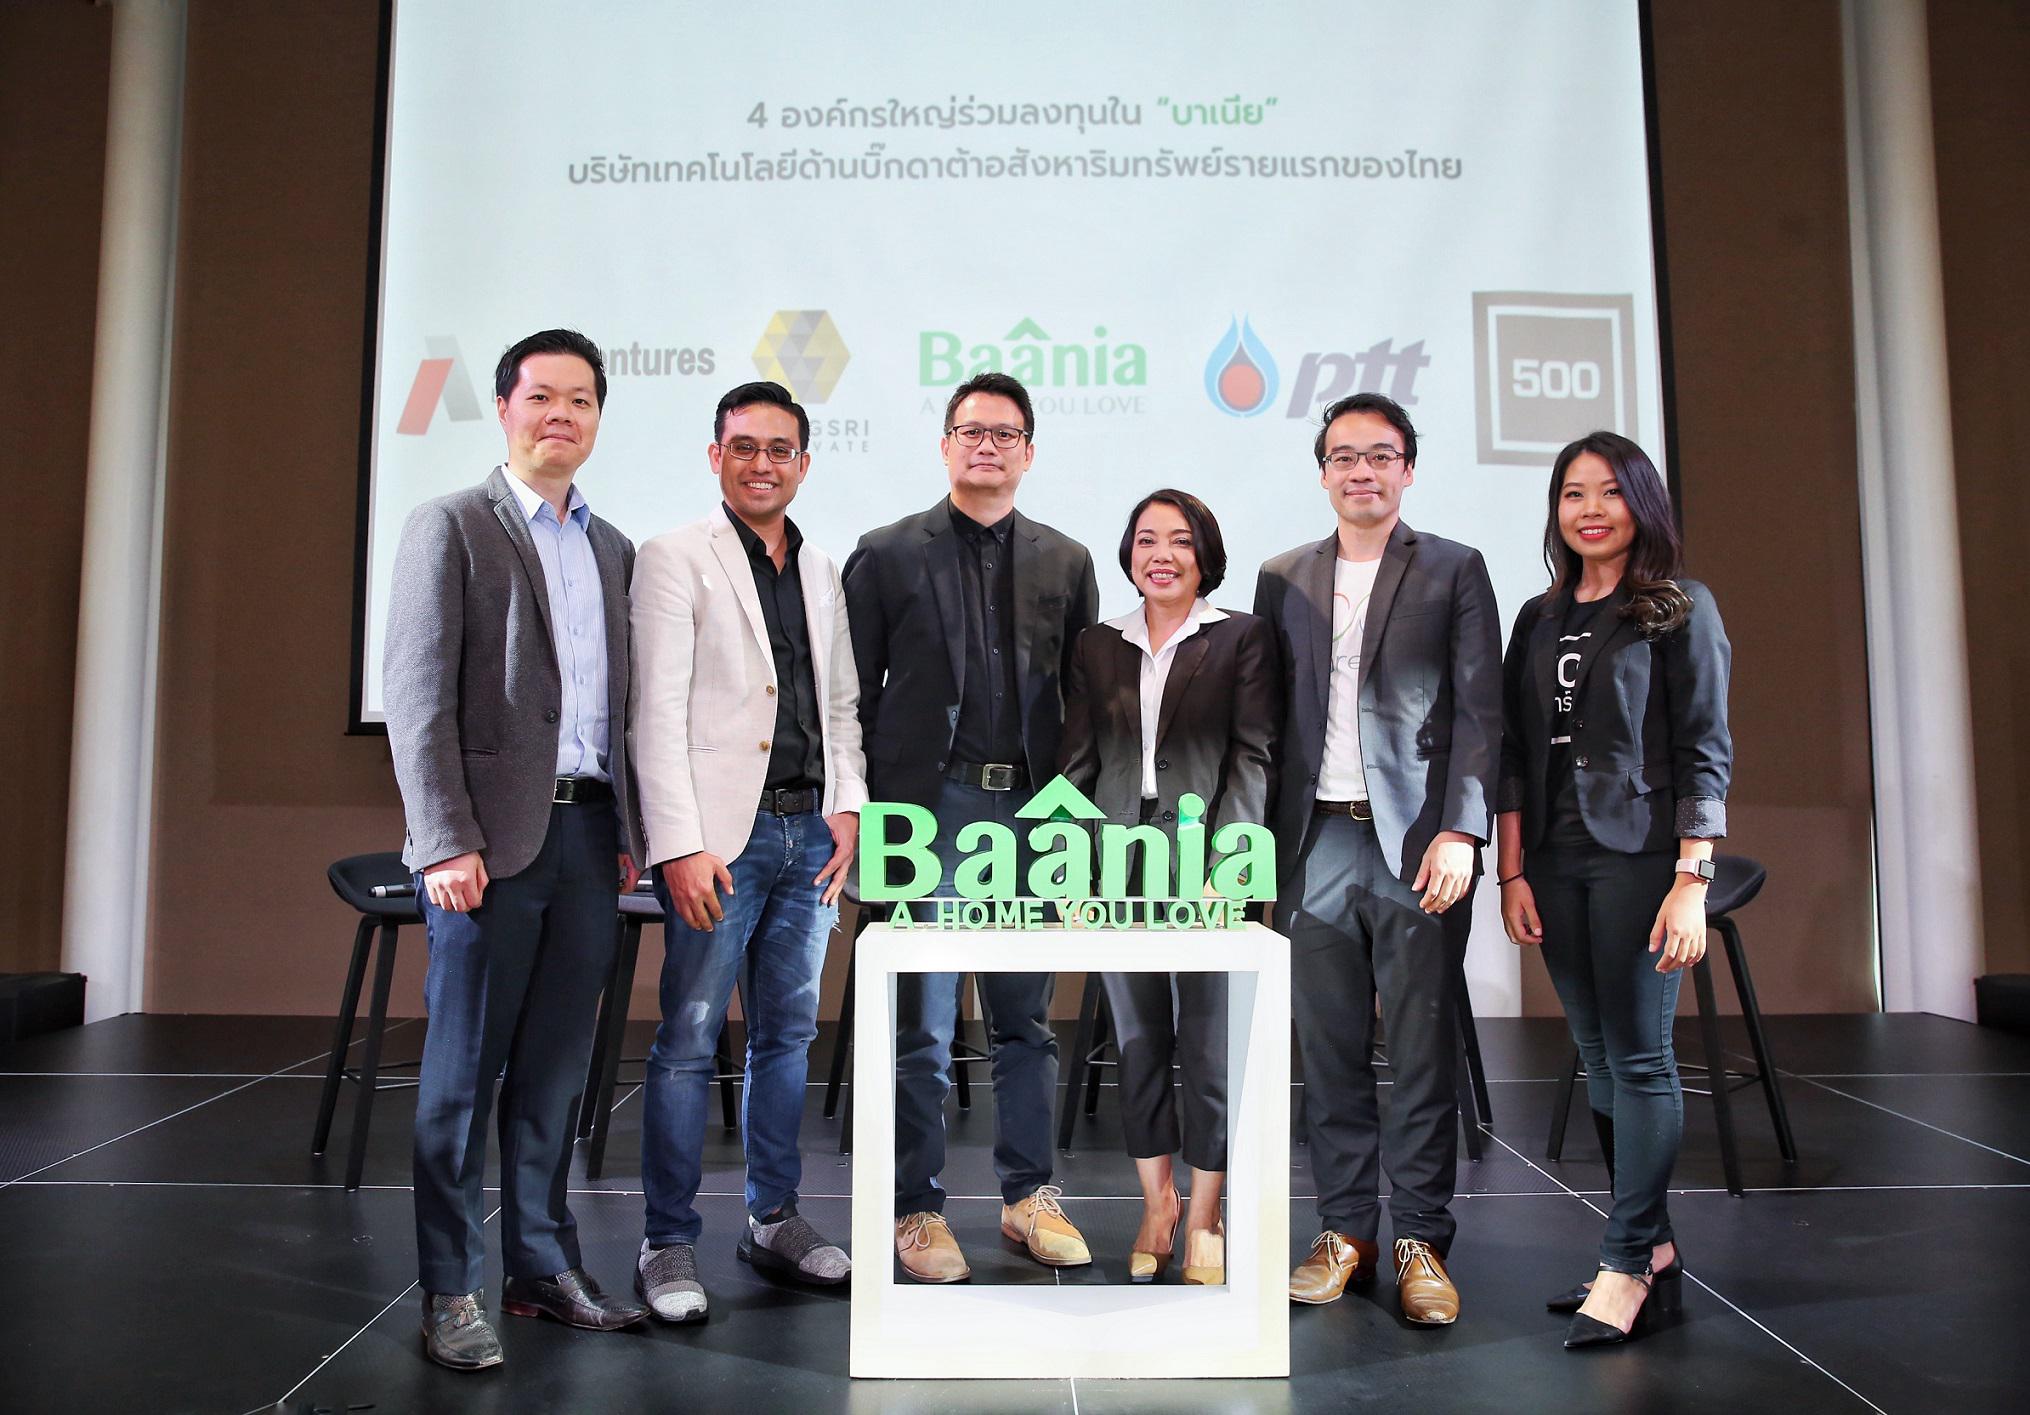 รูปบทความ 4 ธุรกิจร่วมลงทุนใน "บาเนีย" พัฒนา Big Data ด้านอสังหาริมทรัพย์รายแรกของไทย